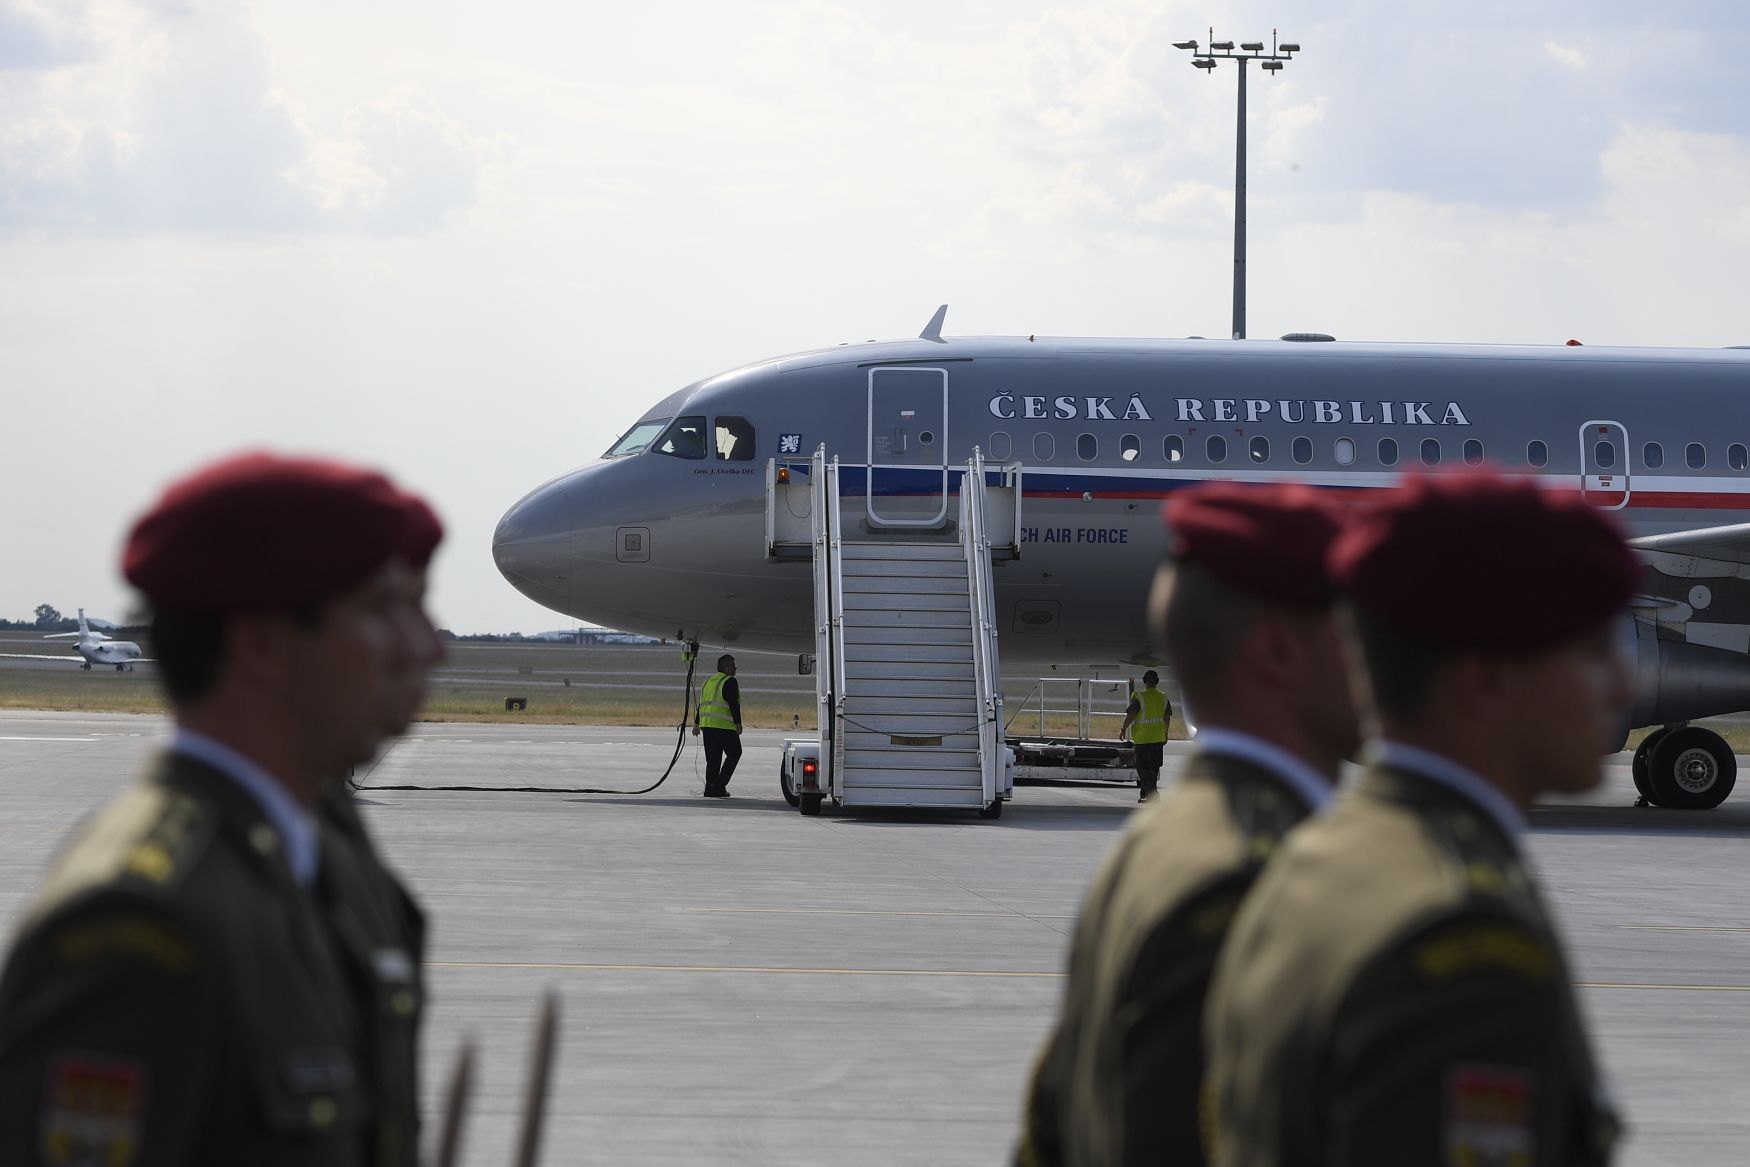 Speciál s ostatky padlých vojáků přistál na ruzyňském letišti v Praze.